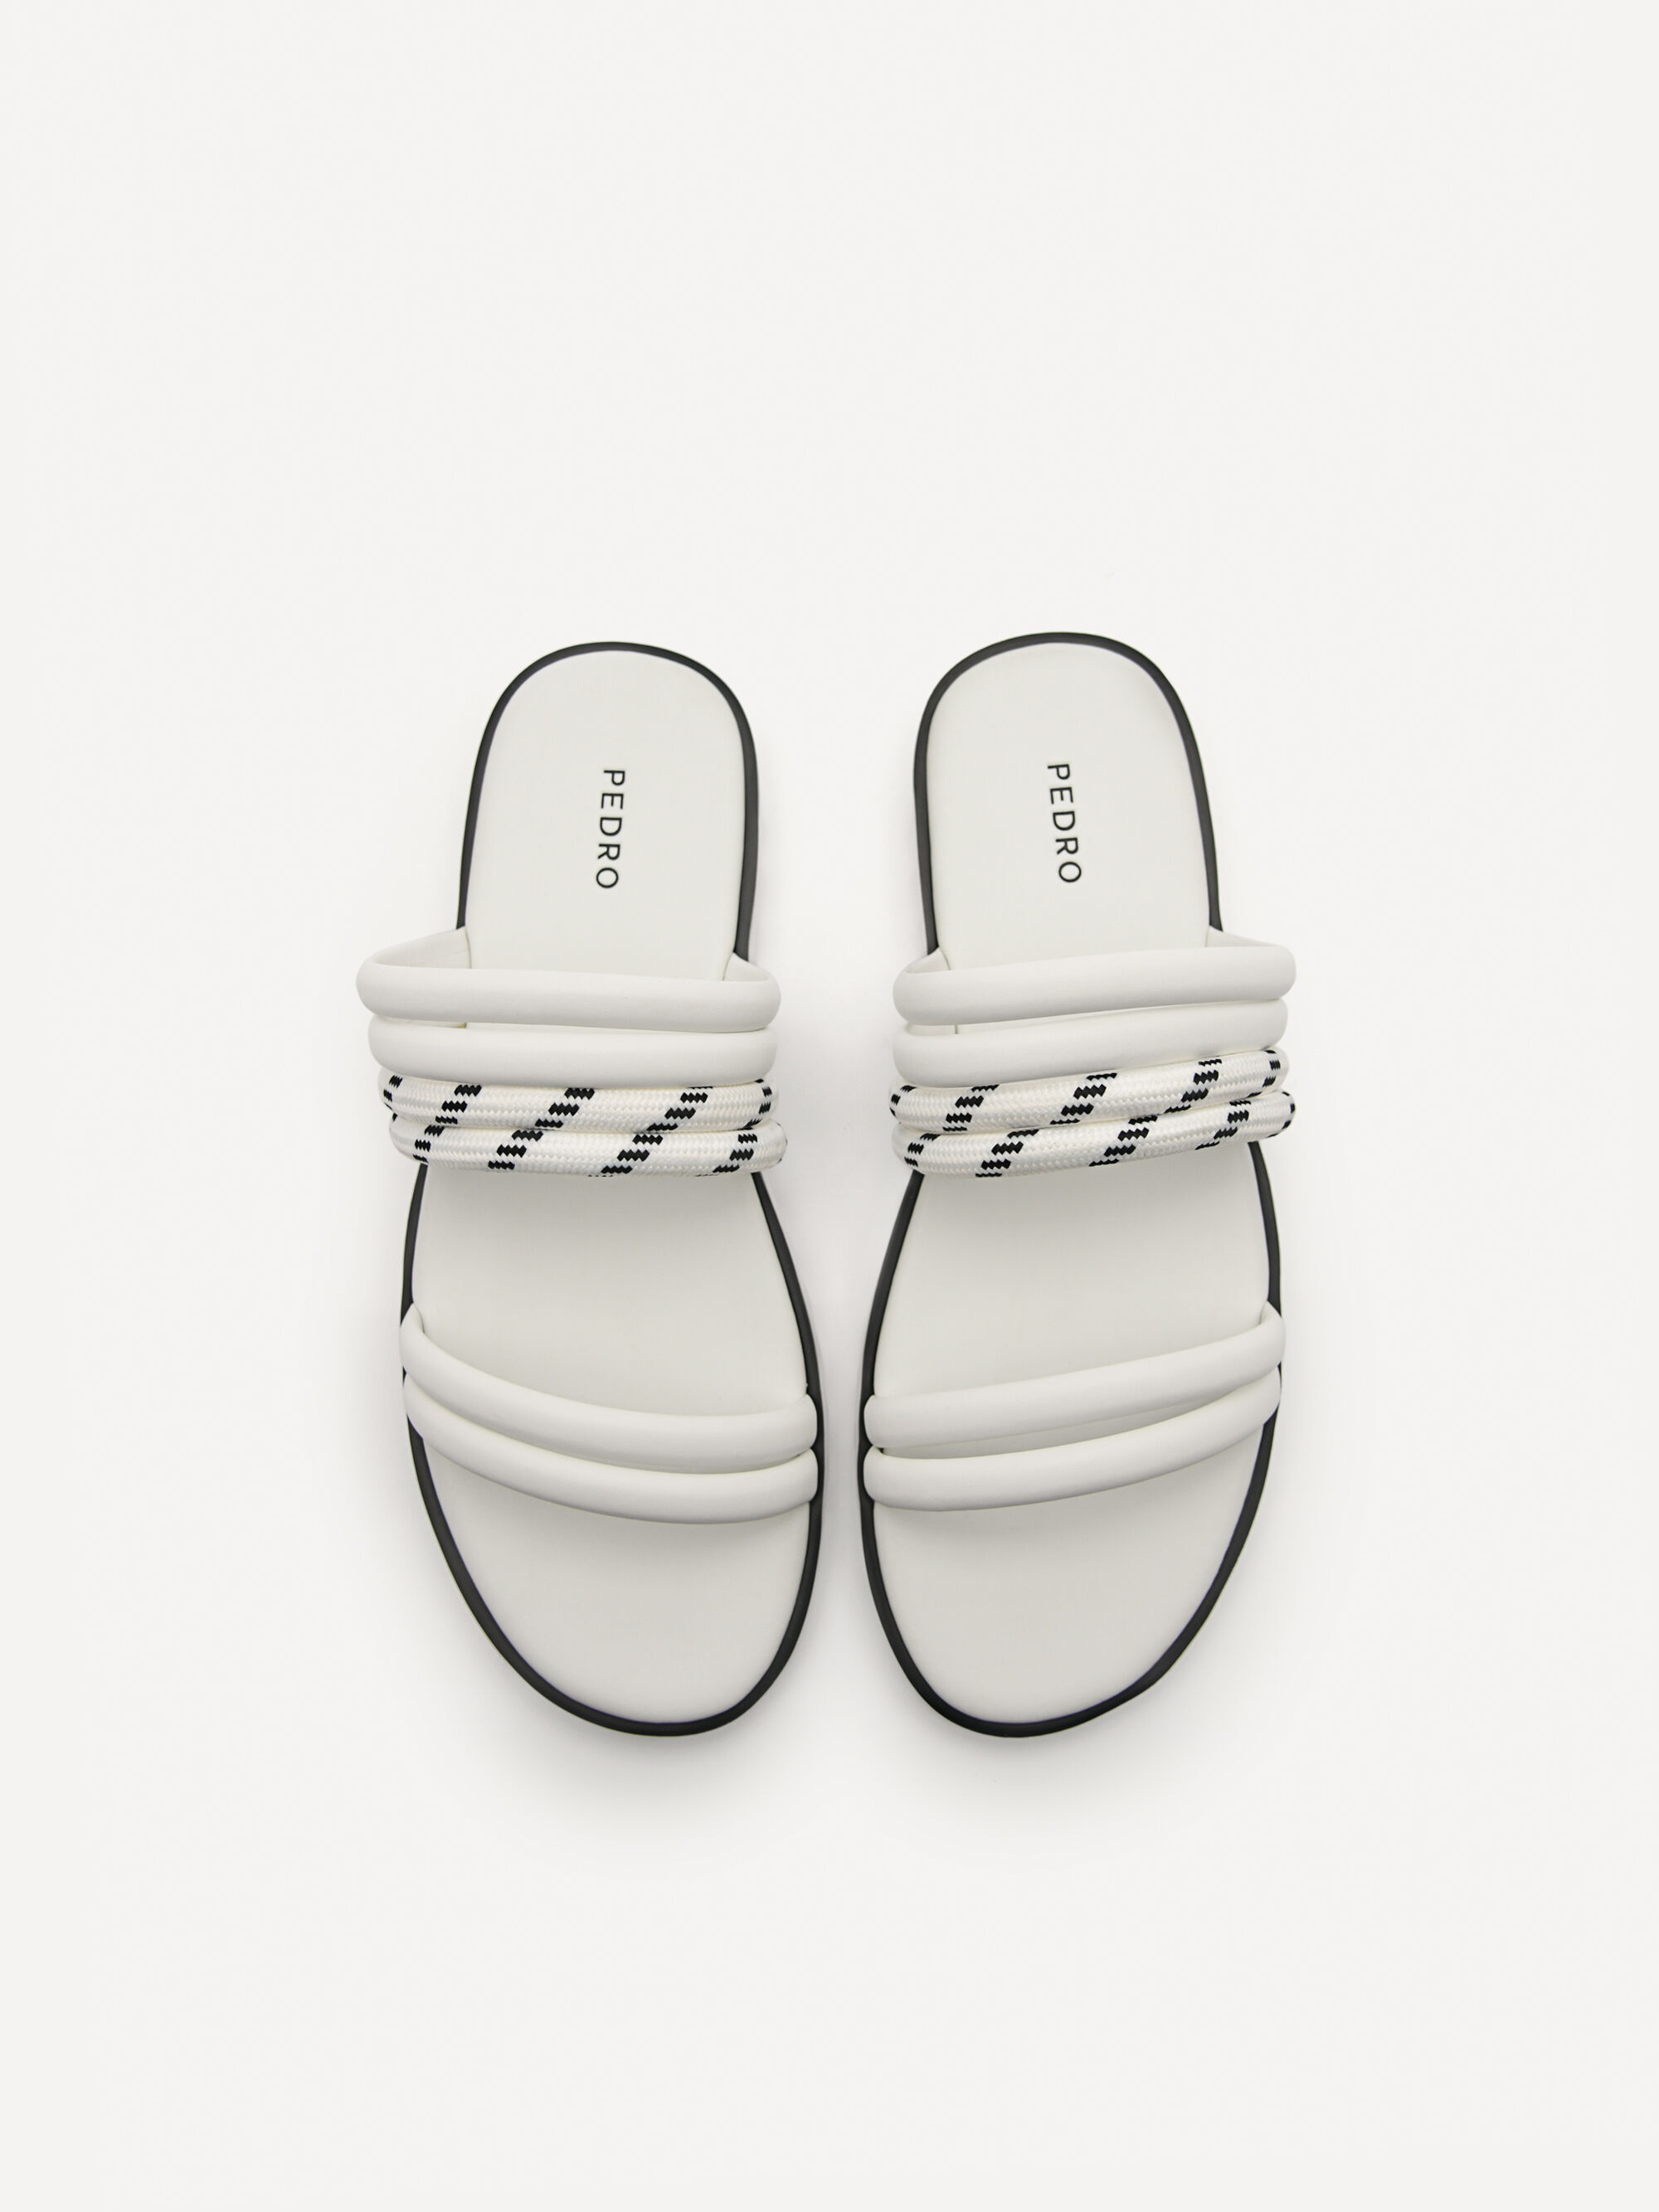 Cord Slide Sandals, White